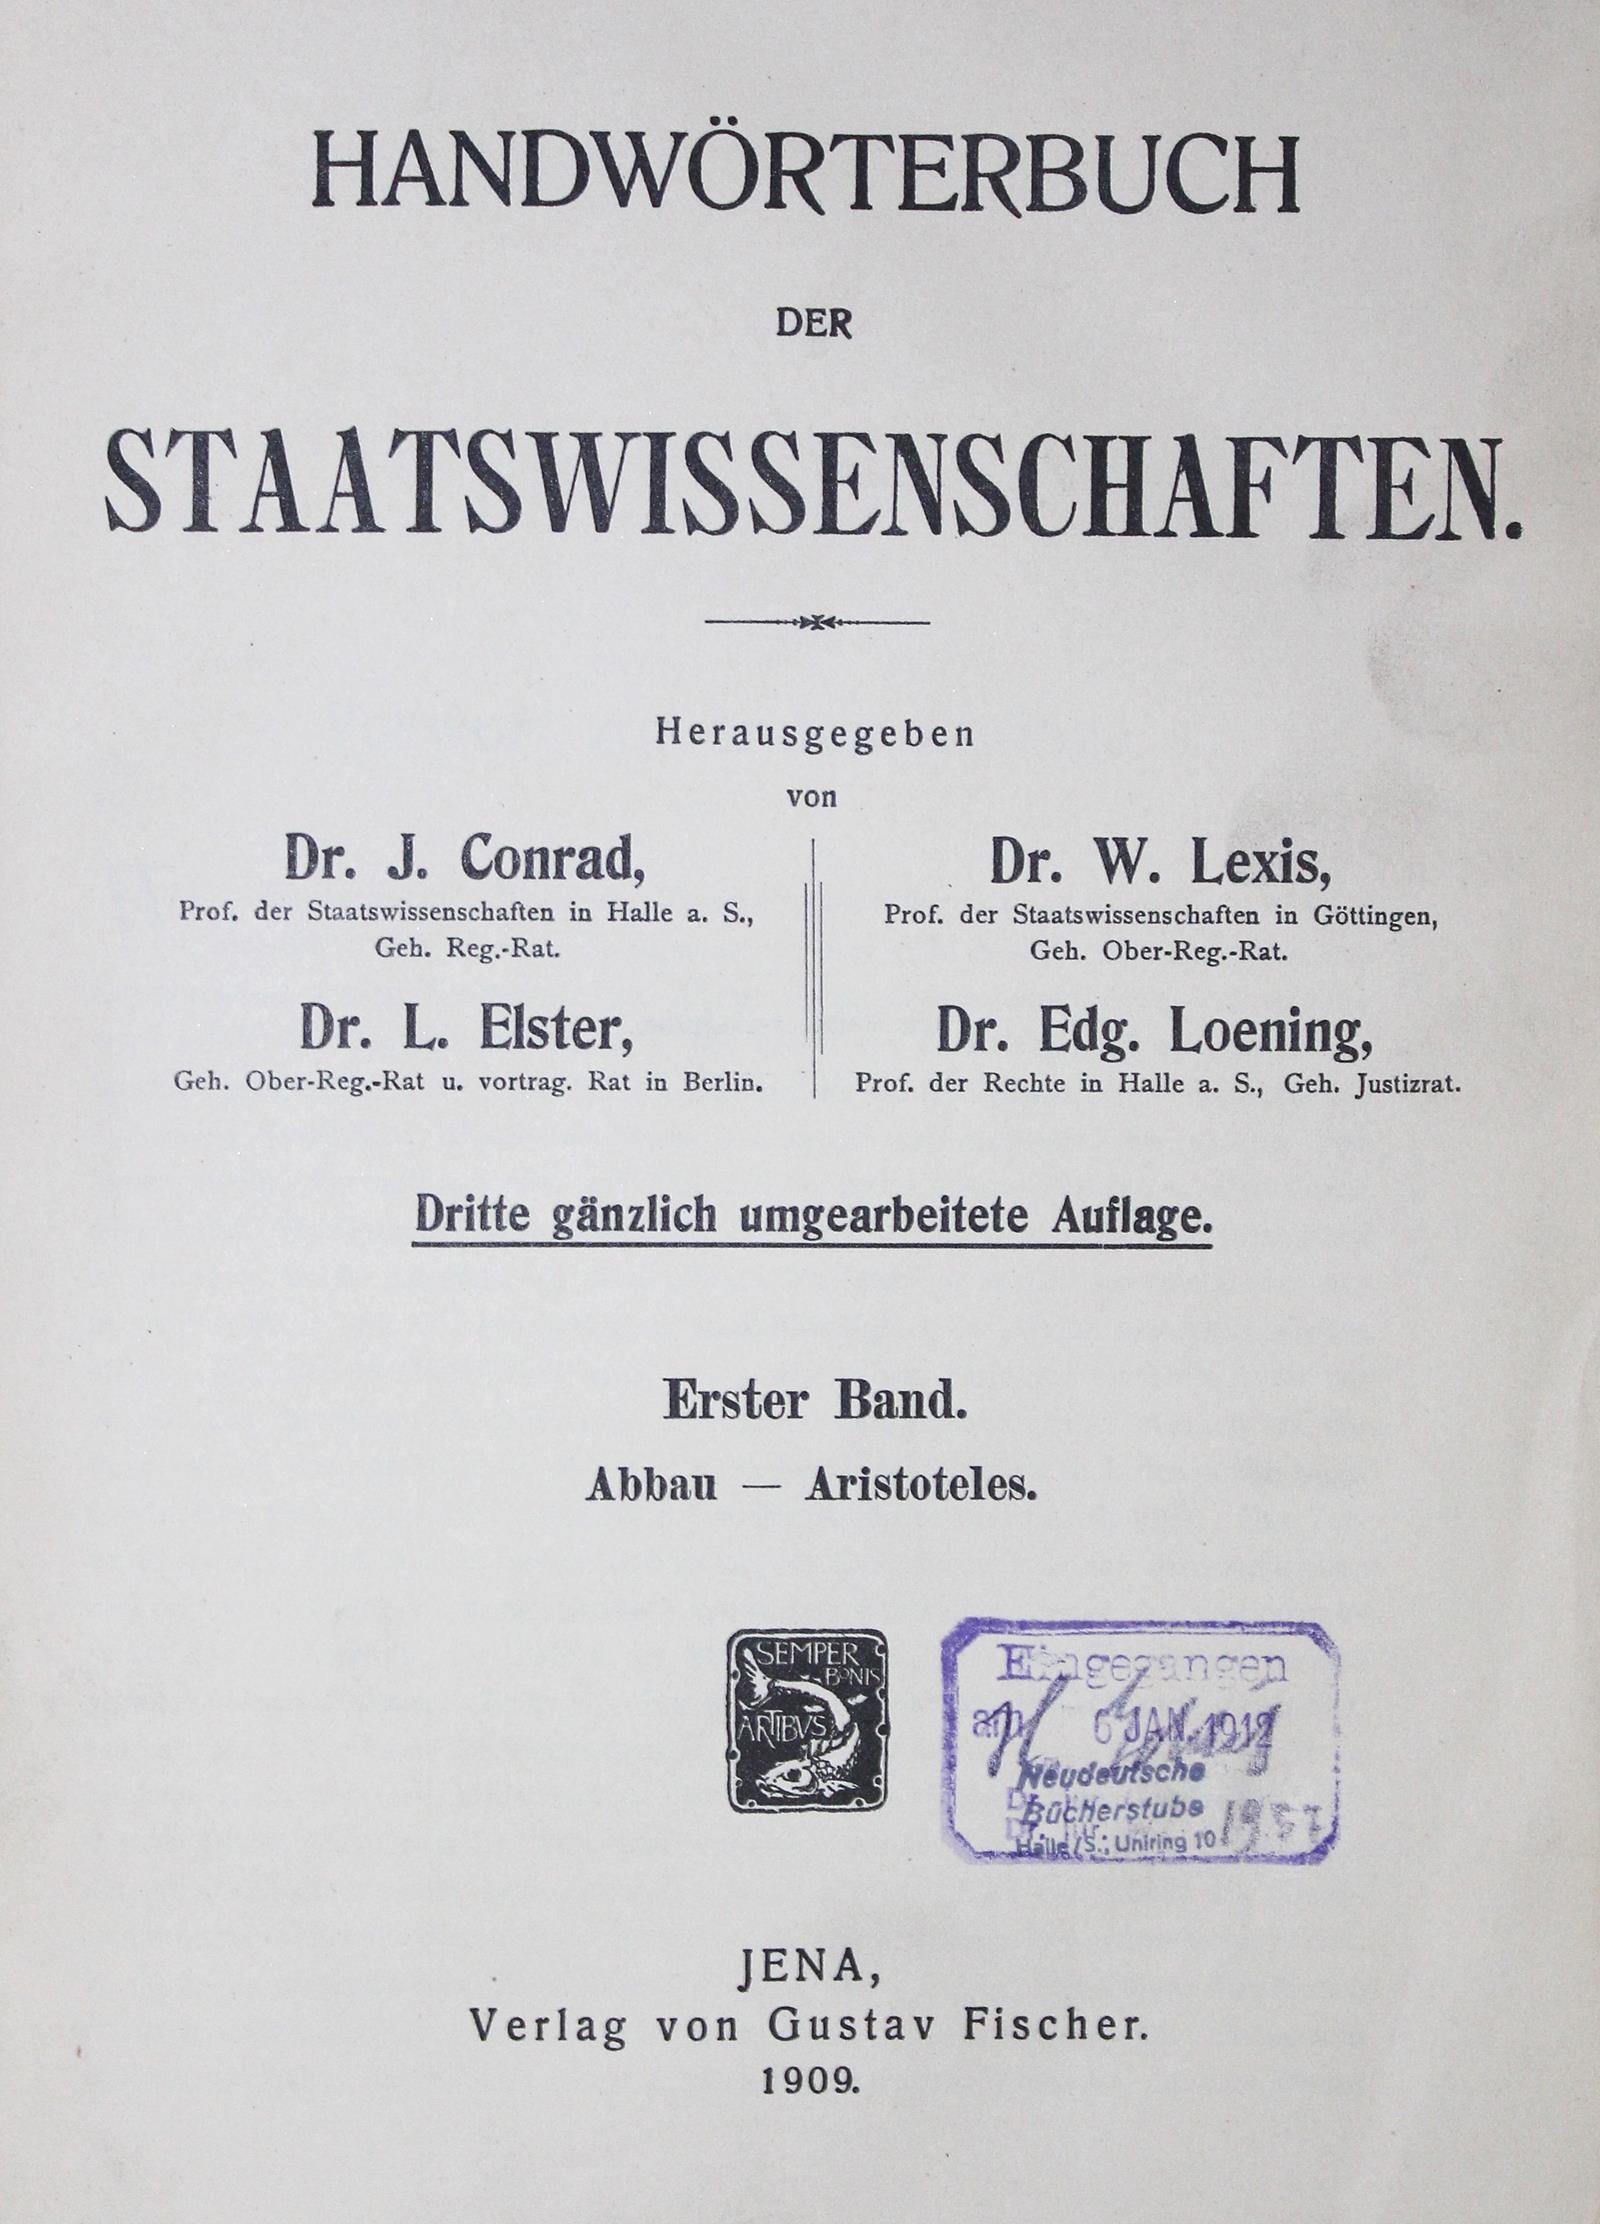 Handwörterbuch der Staatswissenschaften. | Bild Nr.1